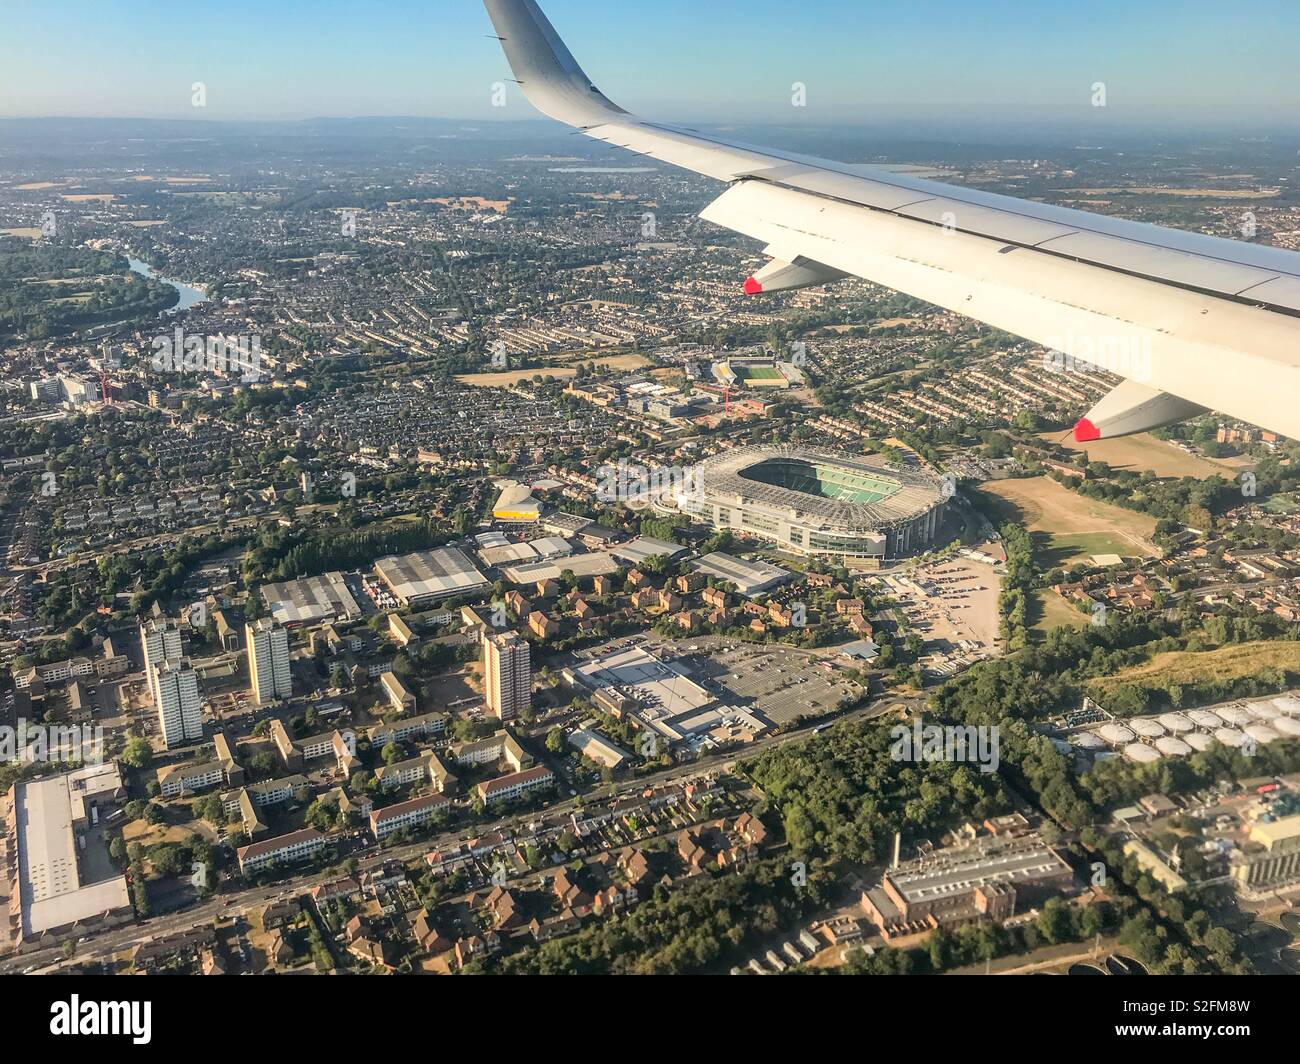 Vista aérea del estadio de rugby de Twickenham y el área residencial circundante desde un avión a punto de aterrizar en el aeropuerto de Heathrow de Londres. Foto de stock